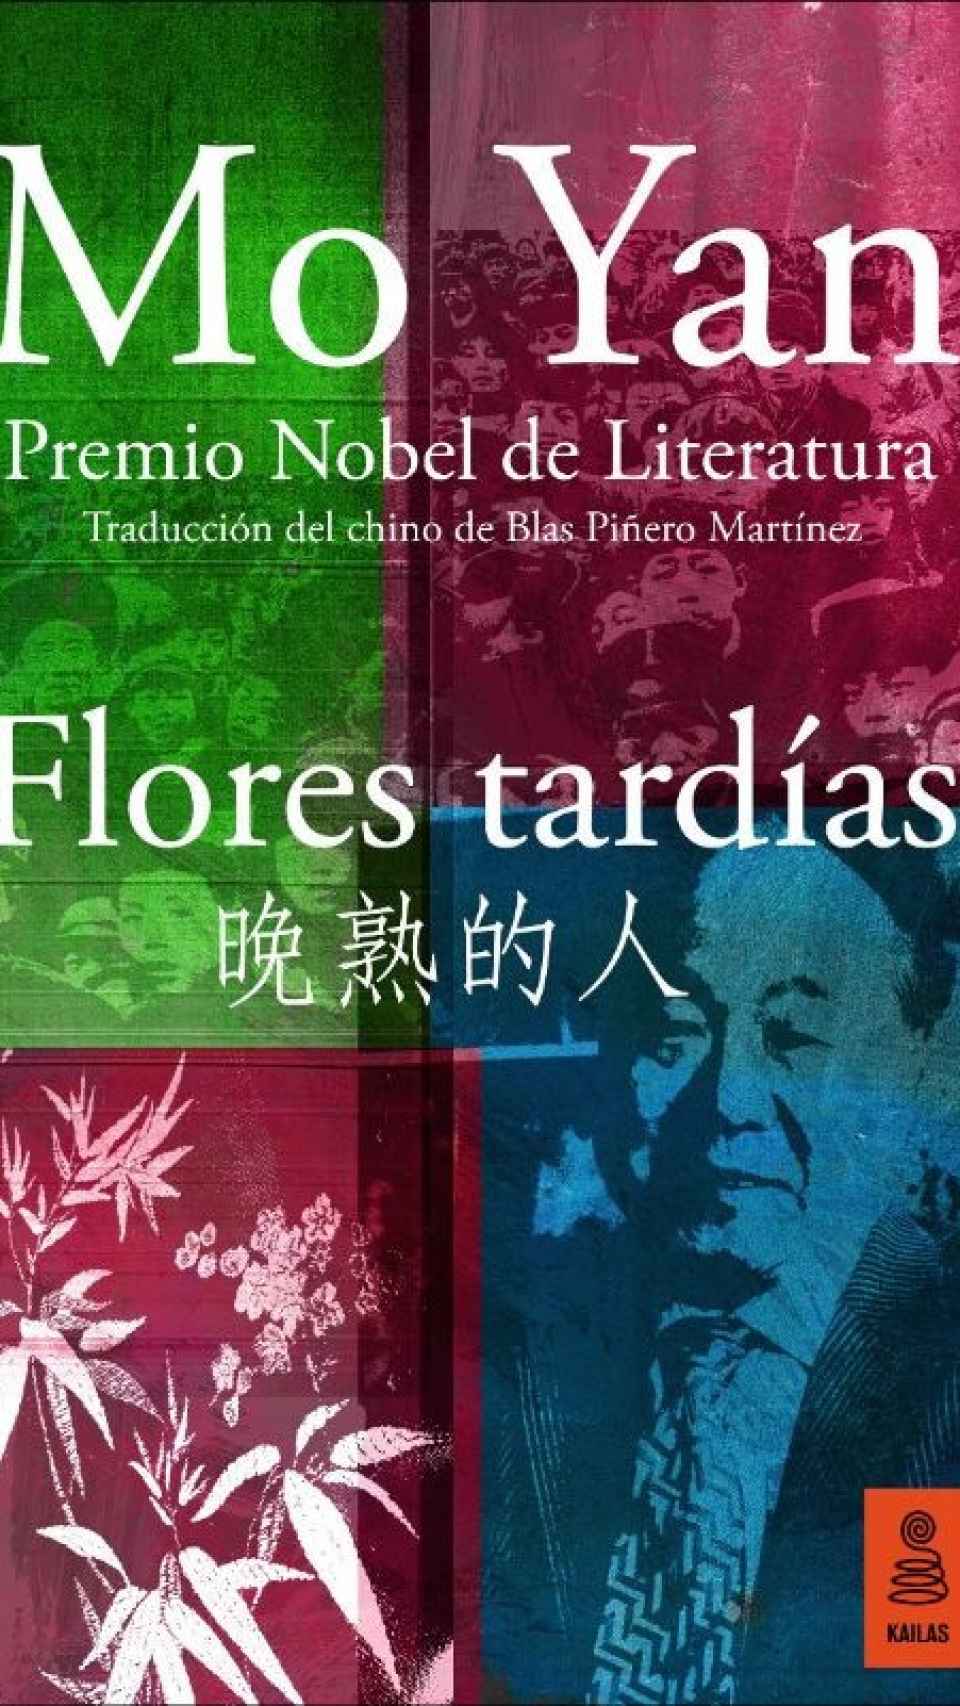 'Flores tardías', el último libro publicado de Mo Yan.